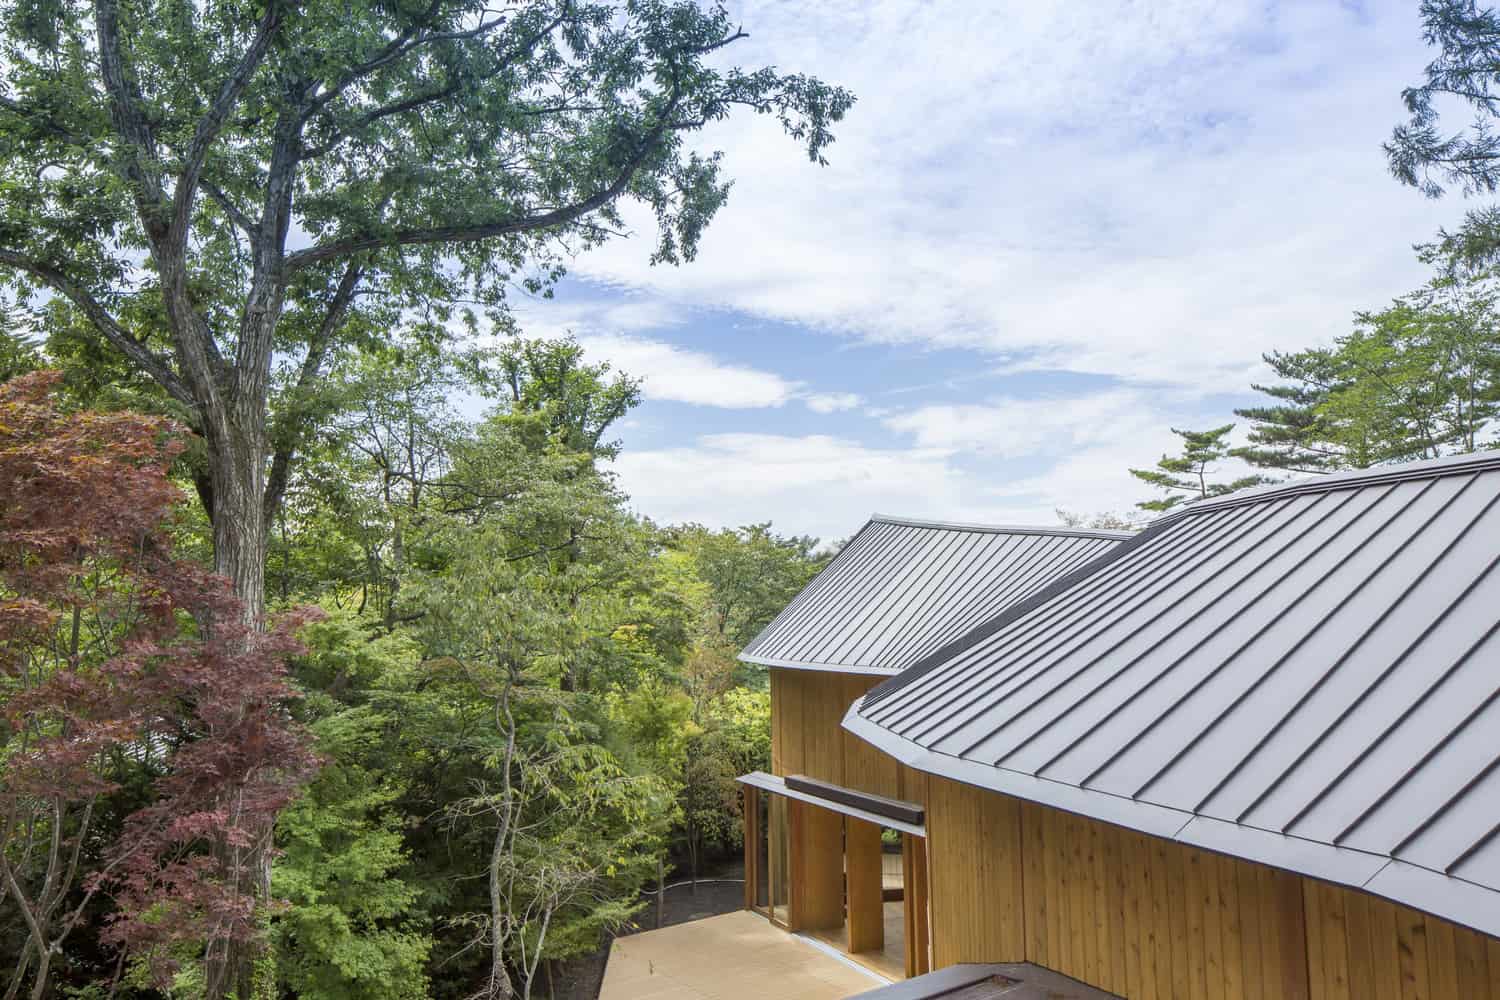 Sự độc đáo trong kiến trúc của Shishi-Iwa House là được thiết kế 2 tầng hình cong mượt mà với mái nhà nhấp nhô theo các tán lá rừng